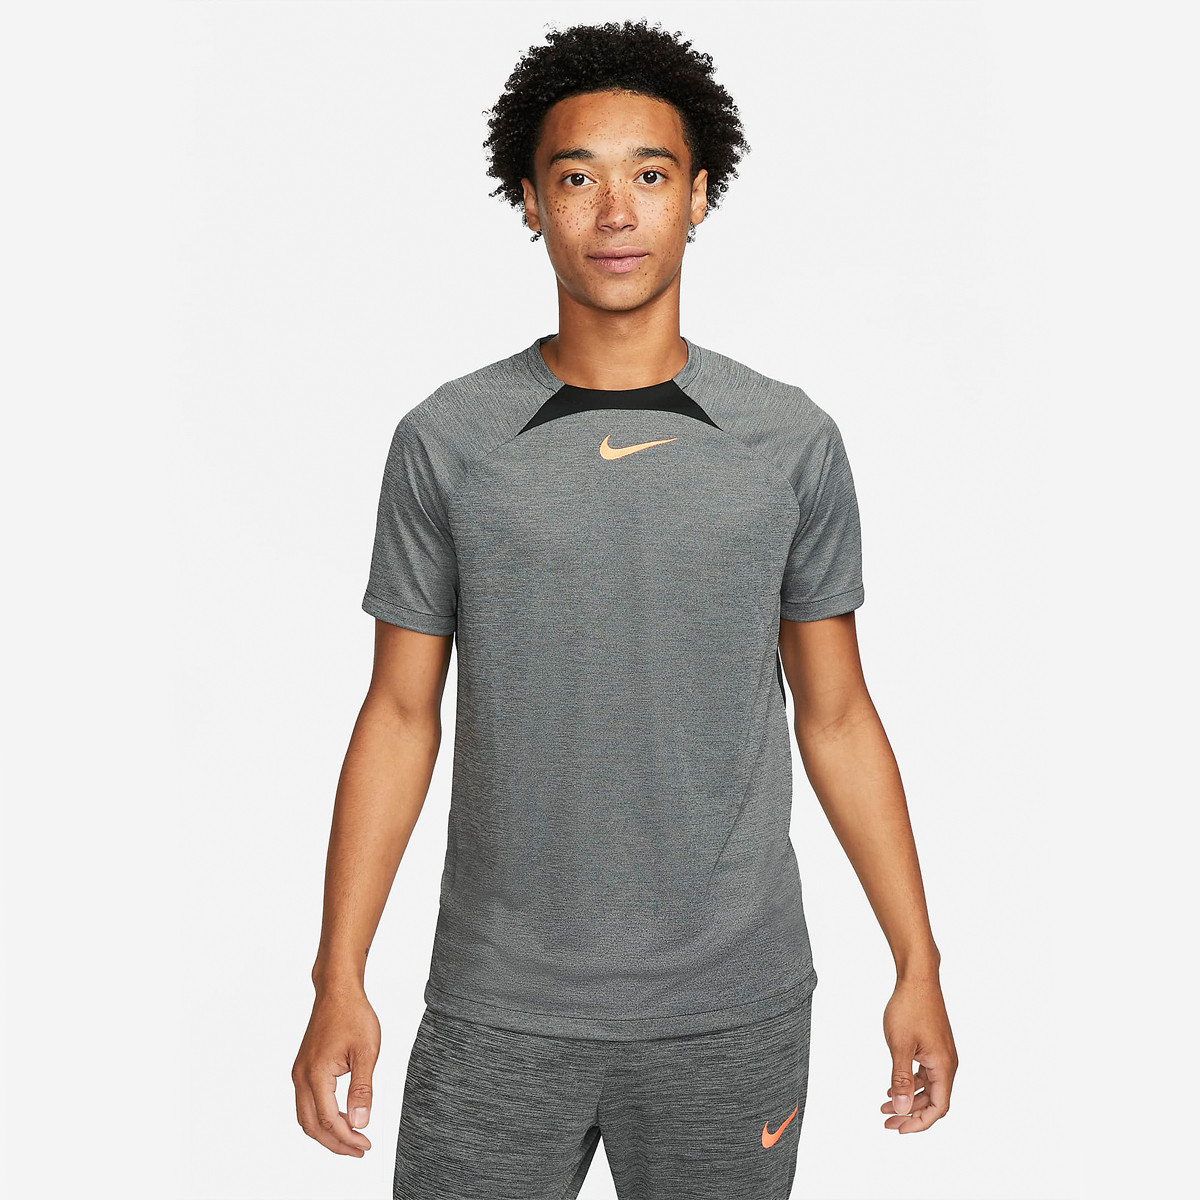 Nike Dri-Fit superset débardeur hommes noir